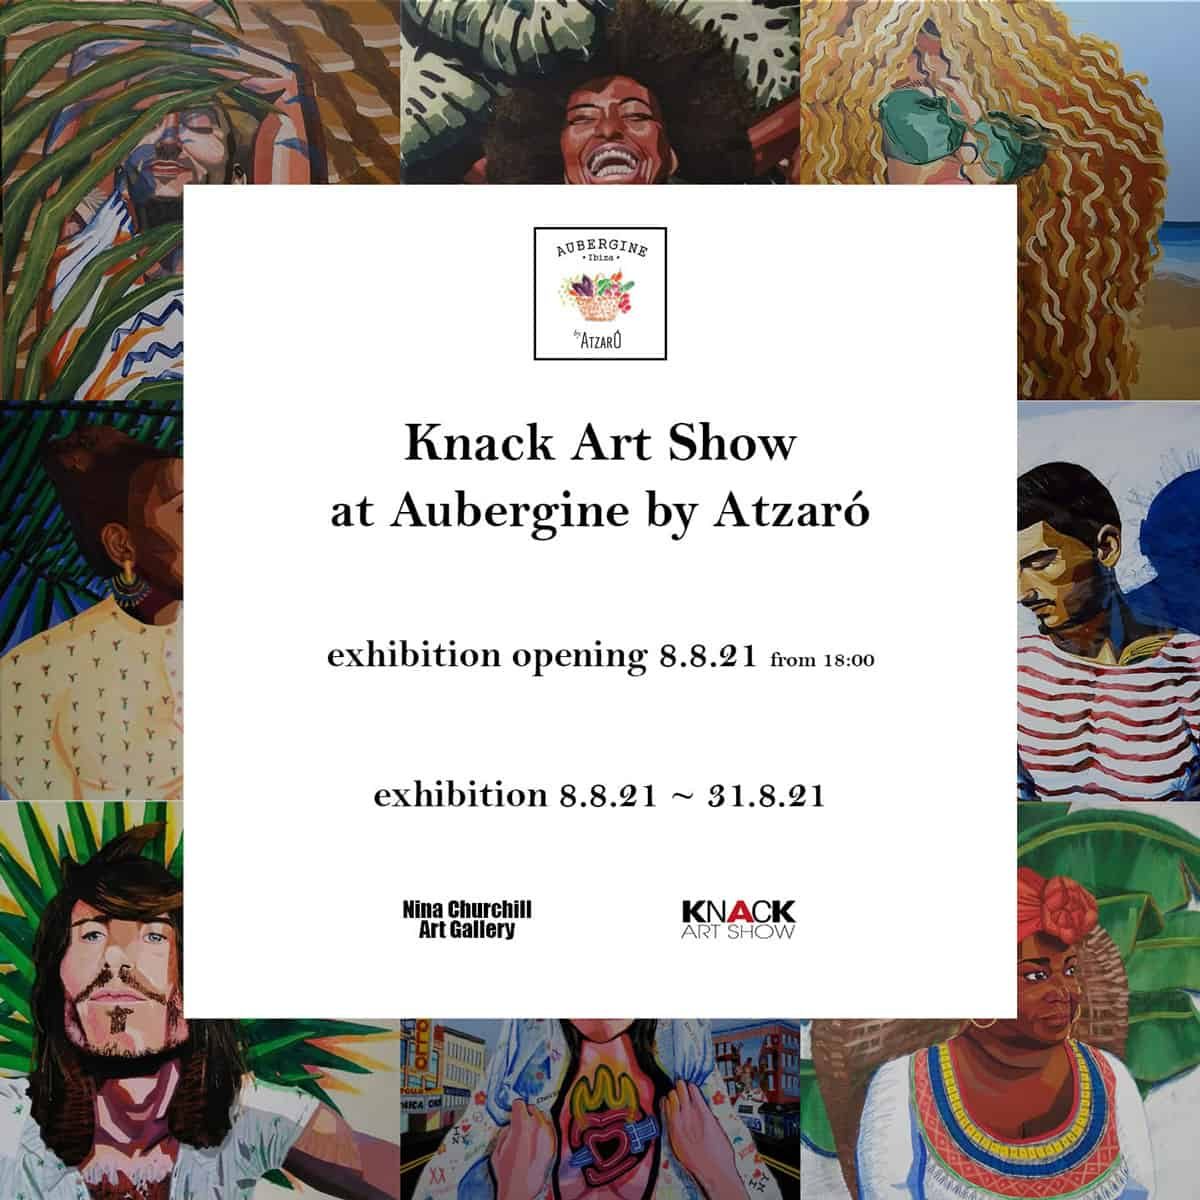 restaurant-aubergine-ibiza-2021-exhibition-knack-art-show-welcometoibiza